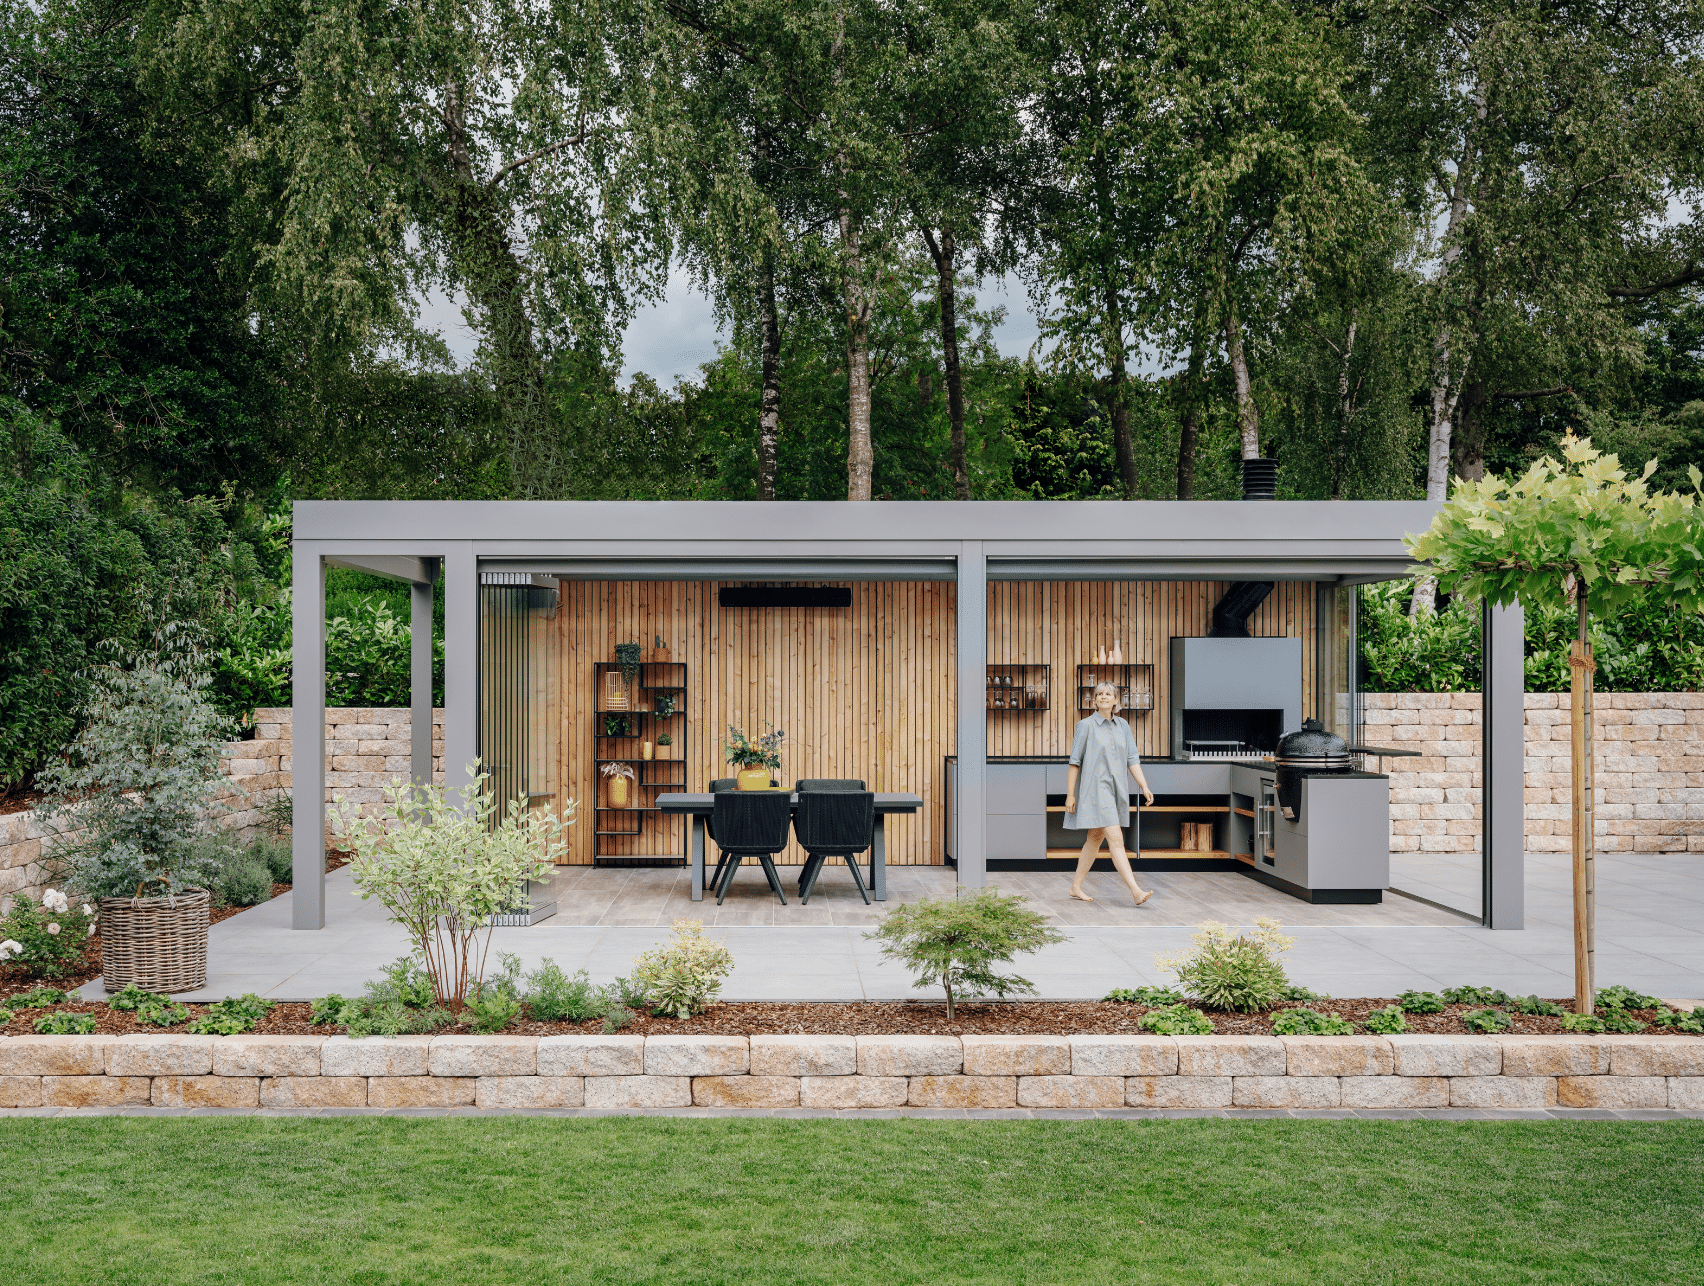 Solarlux zeigt einen Garten mit kleiner Ziegelmauer und überdachter Terrasse mit Holzverkleidung an der Rückwand und Verglasung, mit einer Outdoorküche und gemütlicher Sitzgruppe.